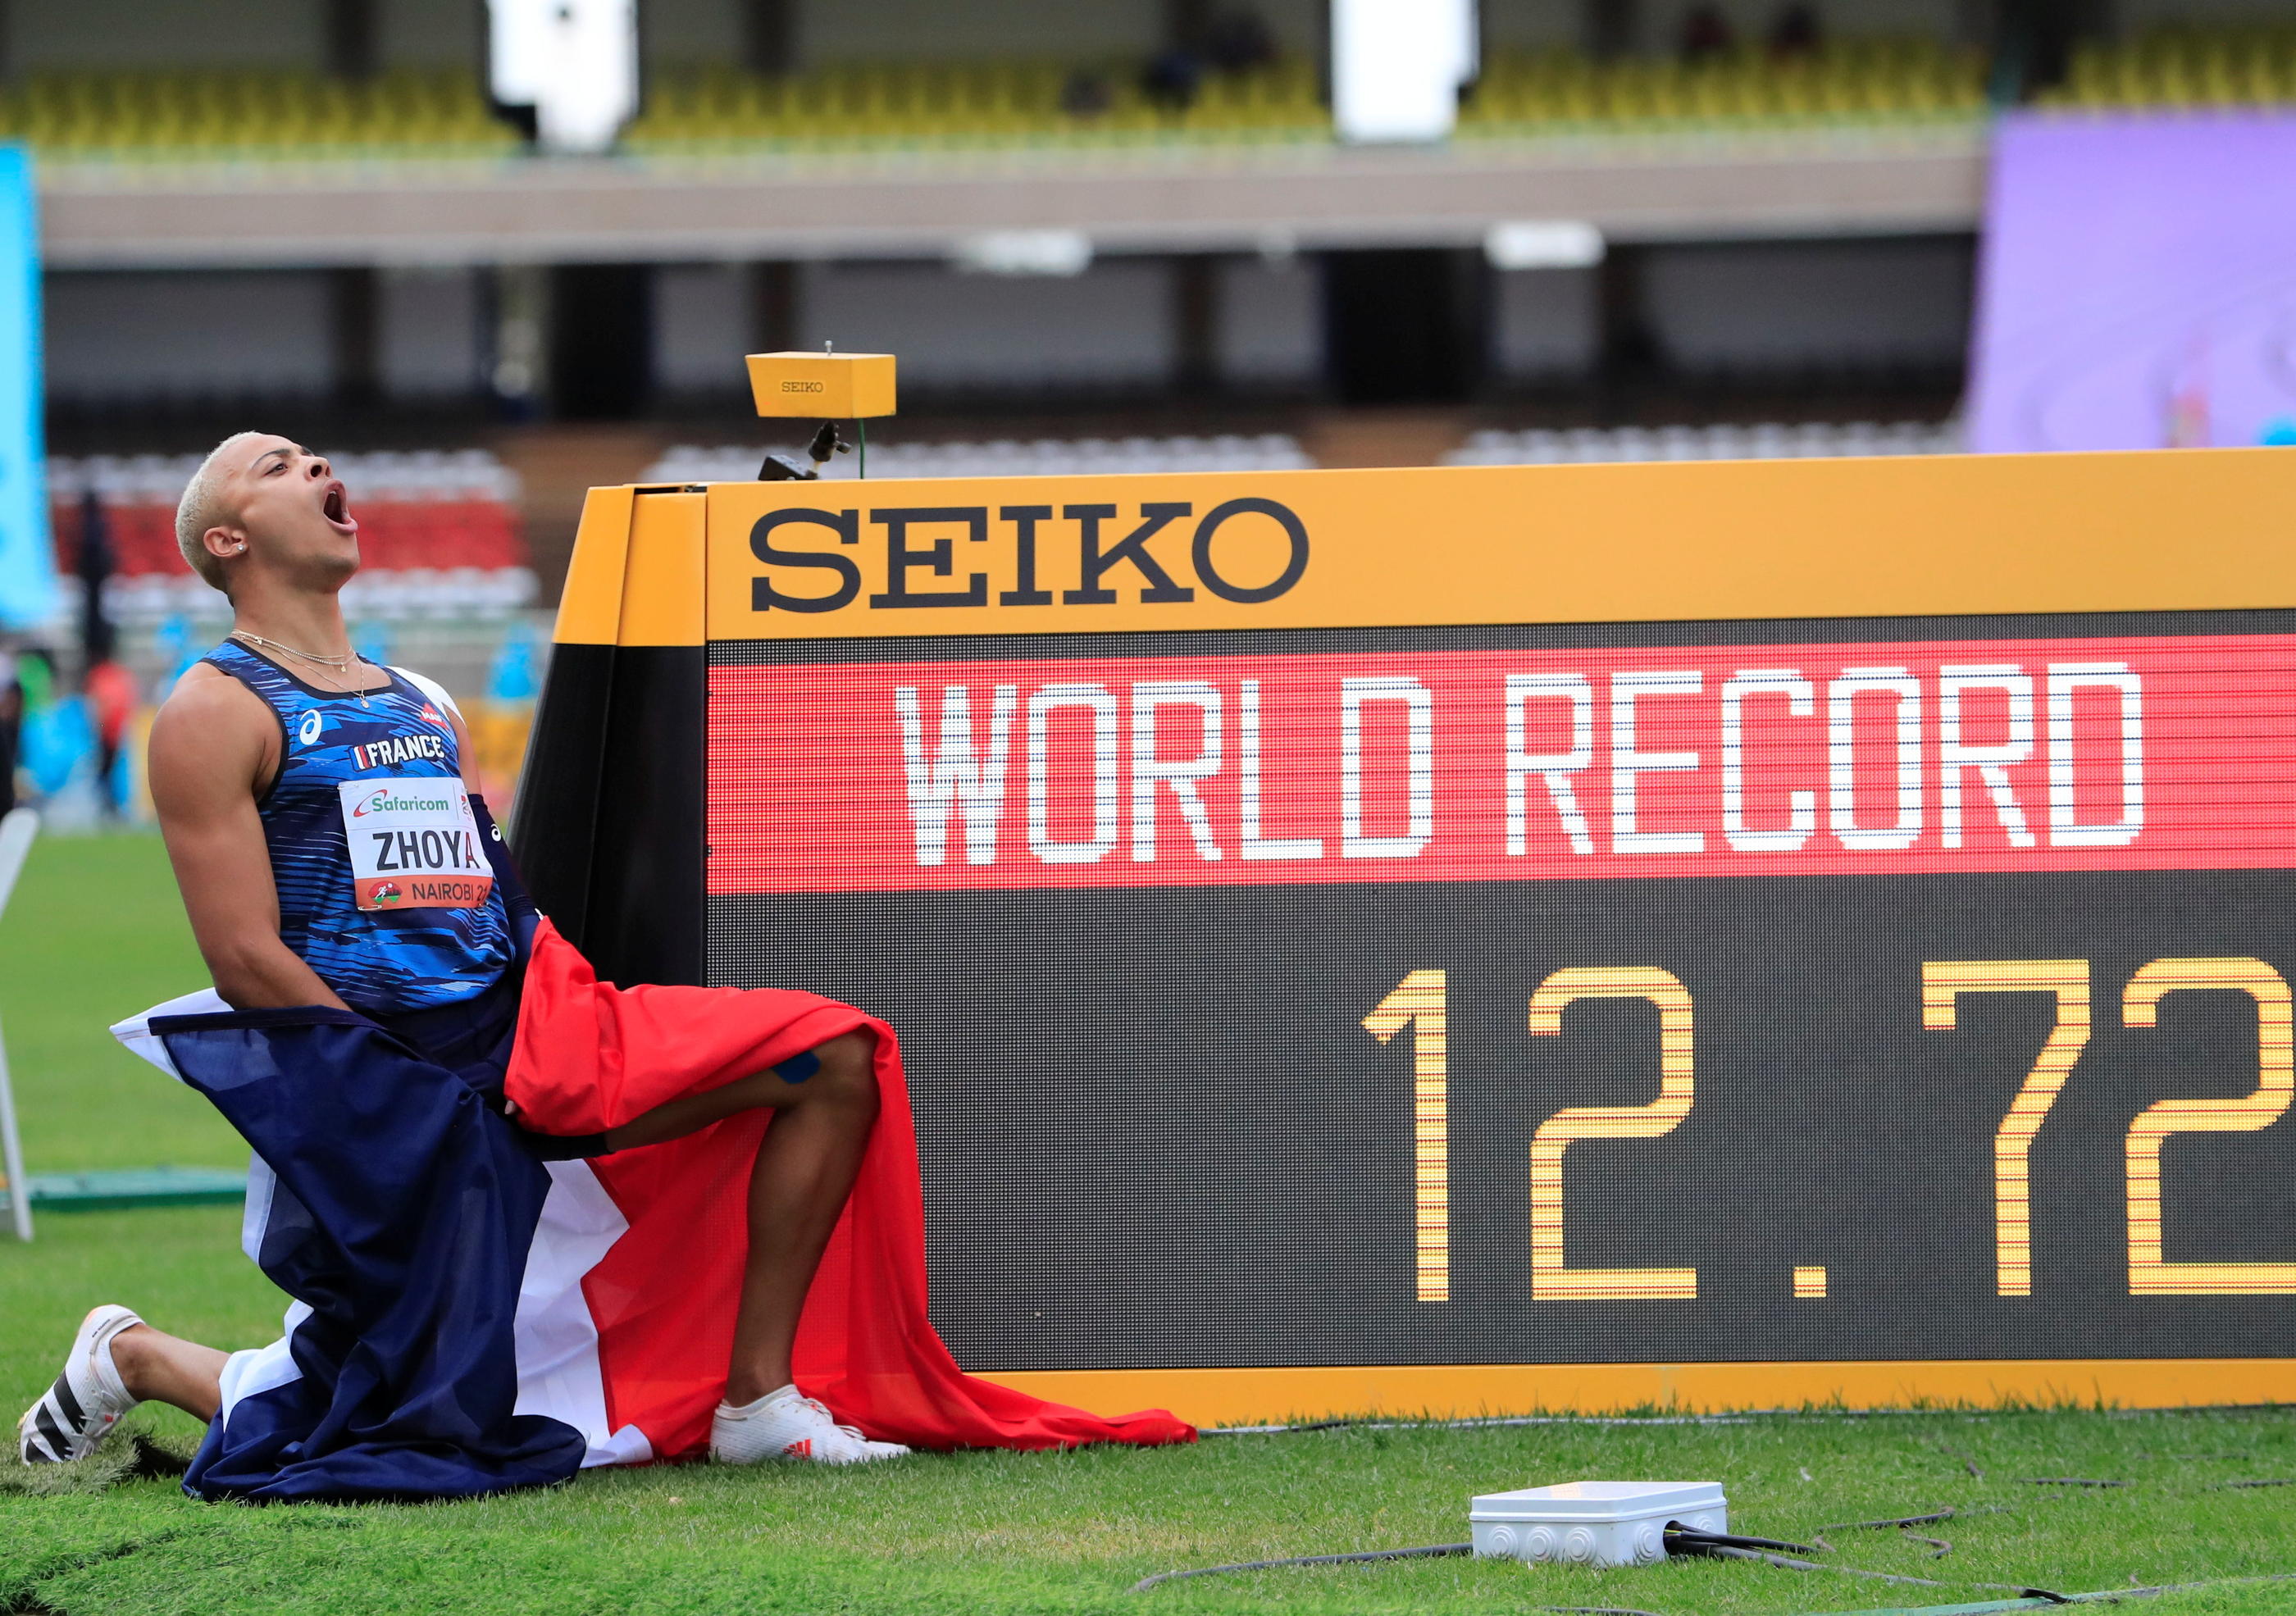 Sasha Zhoya a explosé le record du monde juniors du 110 m haies, en franchissant la ligne en 12"72. Reuters/Thomas Mukoya